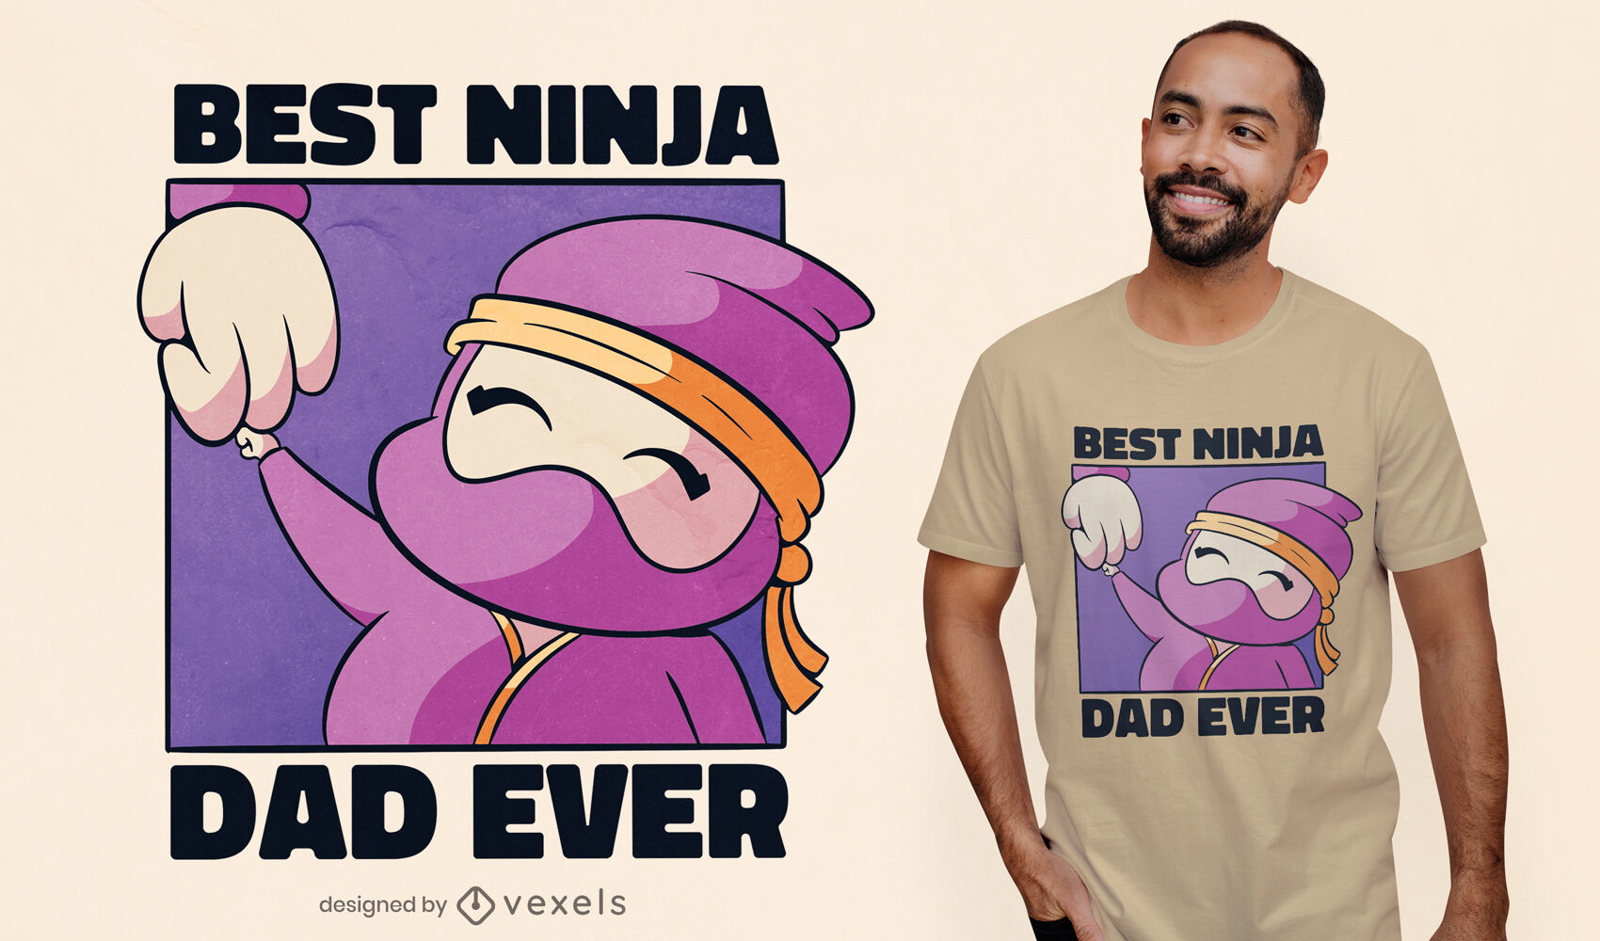 https://images.vexels.com/media/users/3/269881/raw/693f40a3da10bcde18fe9bec16a46f1d-cute-ninja-dad-t-shirt-design.jpg